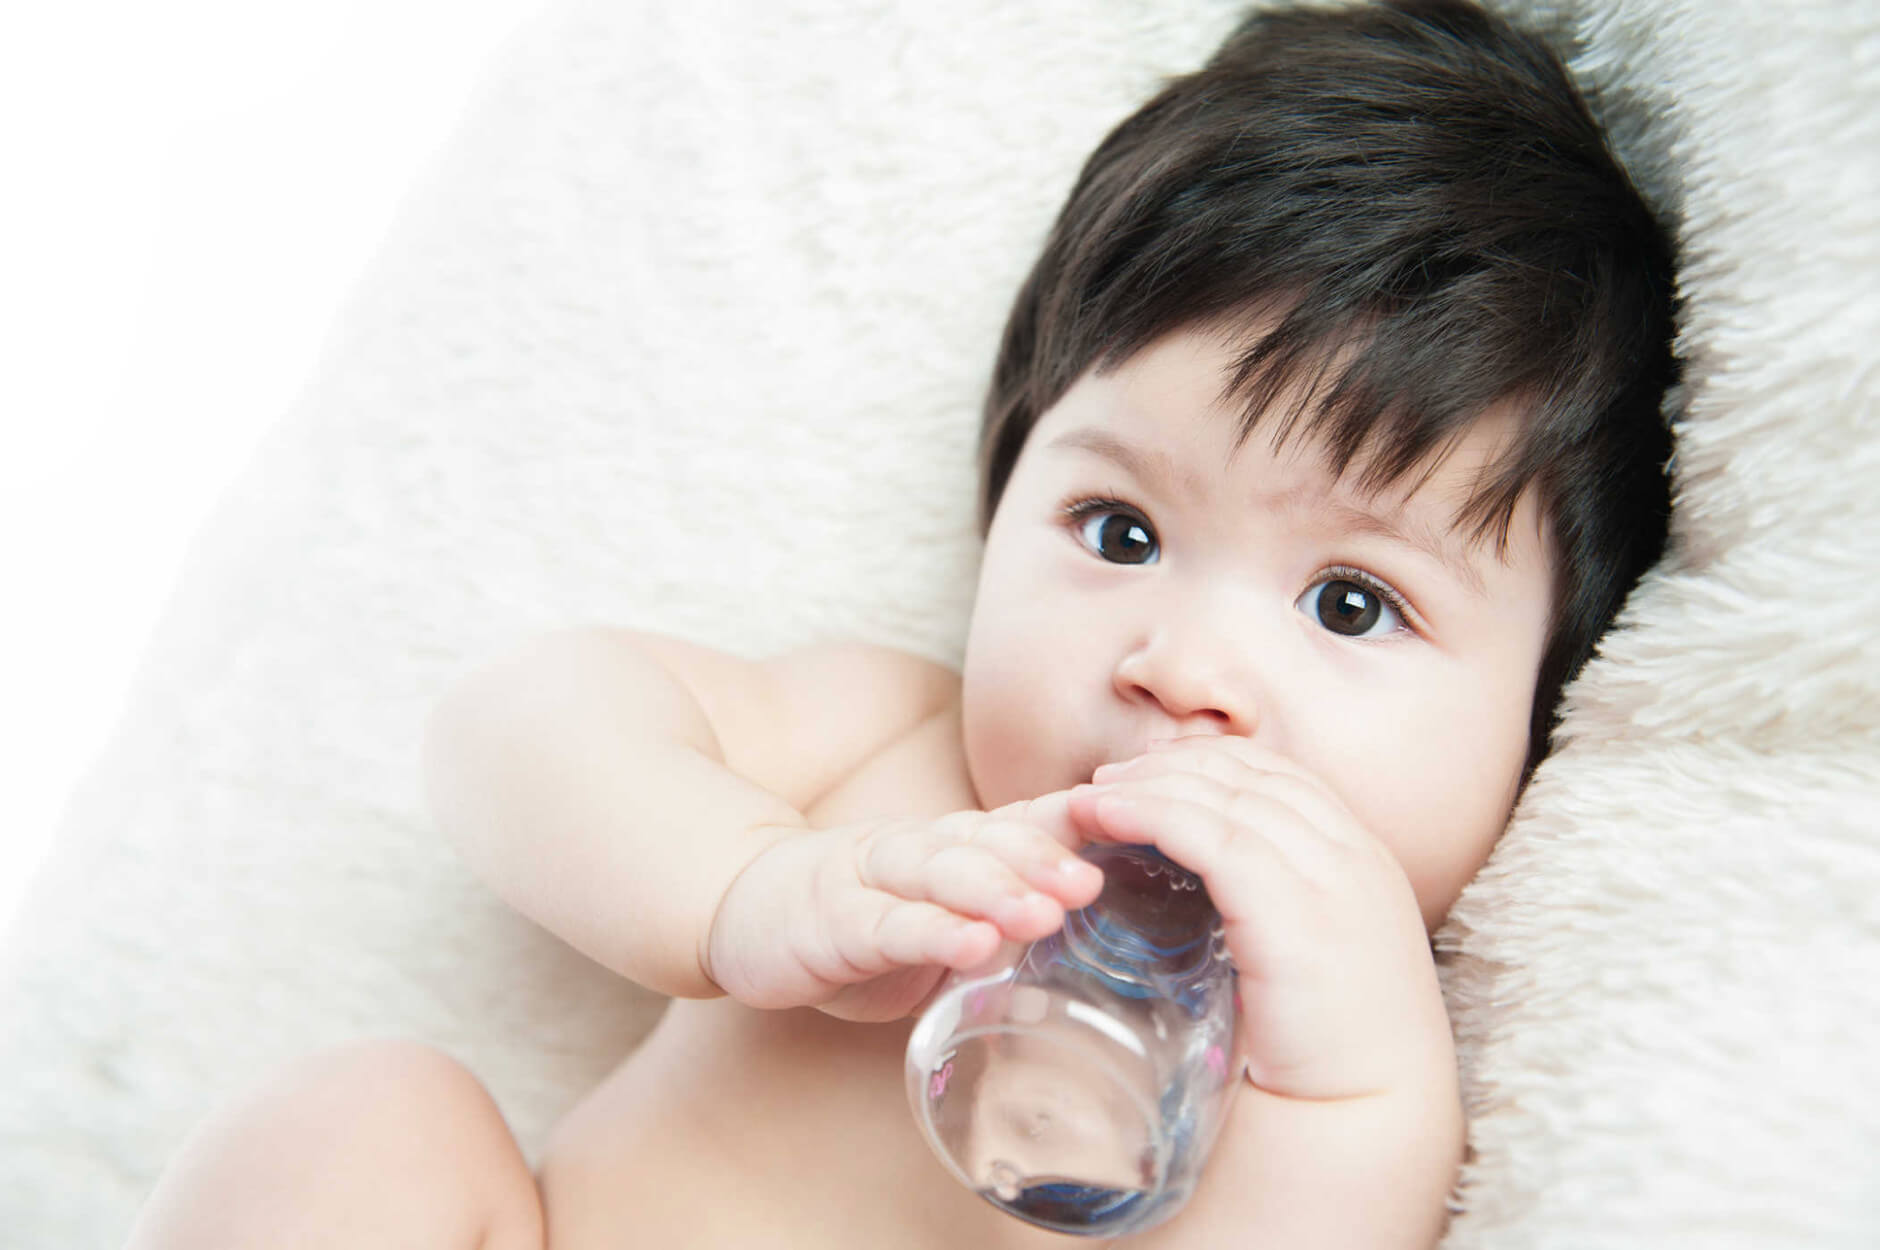 Có nên cho trẻ sơ sinh uống nước không?